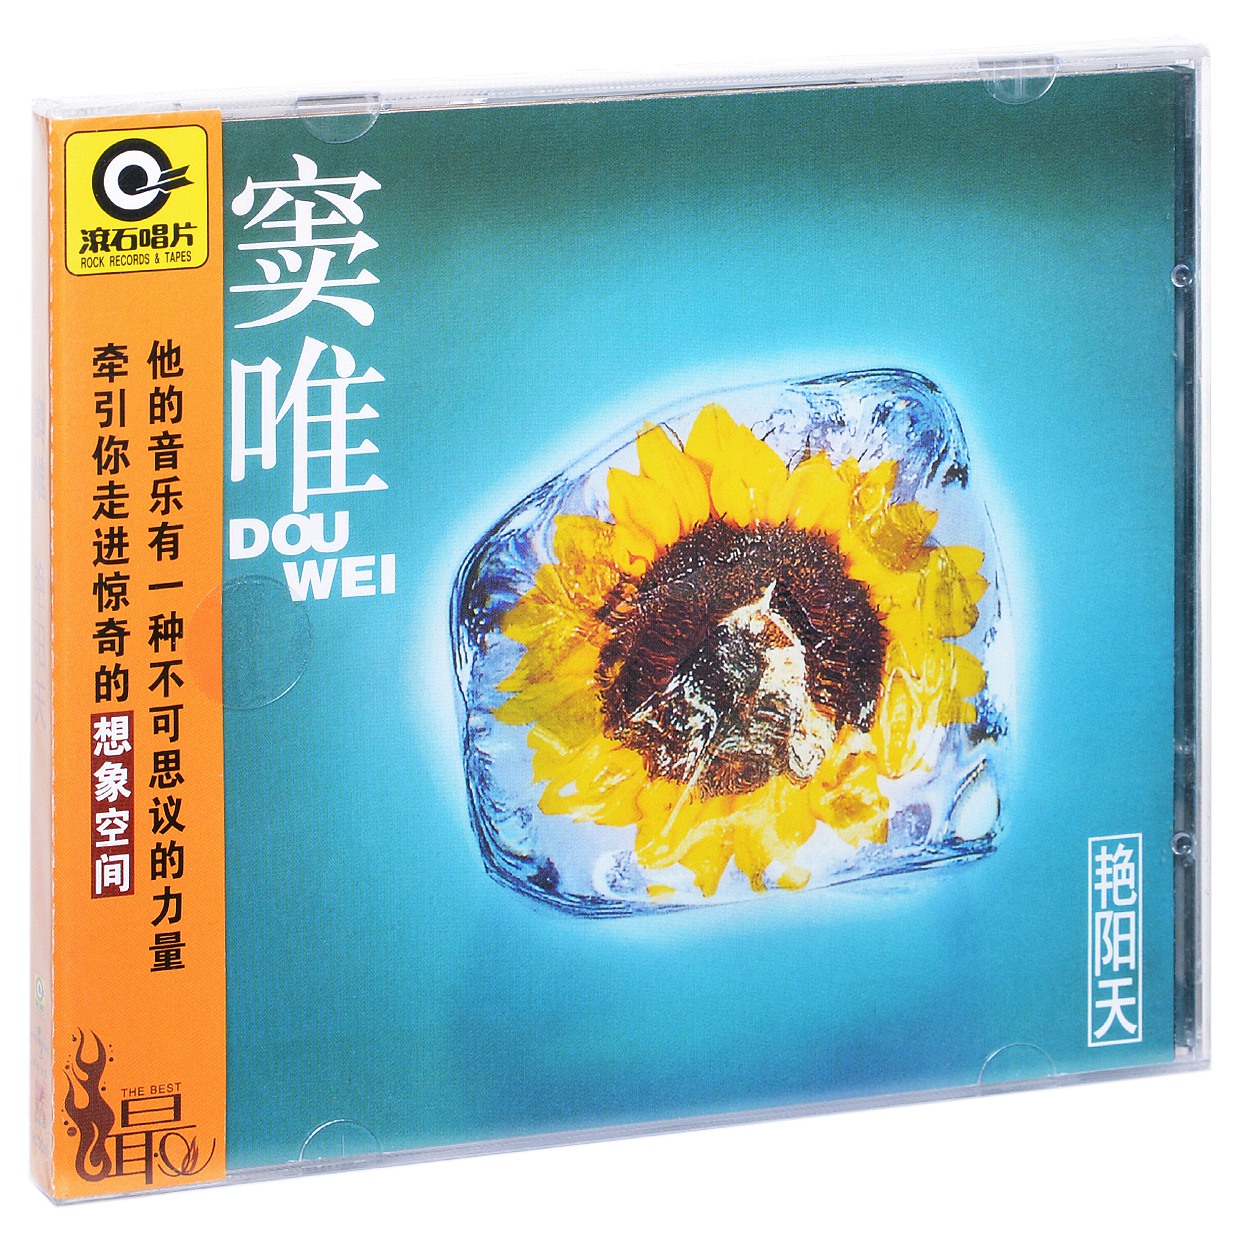 星外星正版/滚石唱片 1995年专辑 窦唯 艳阳天 CD